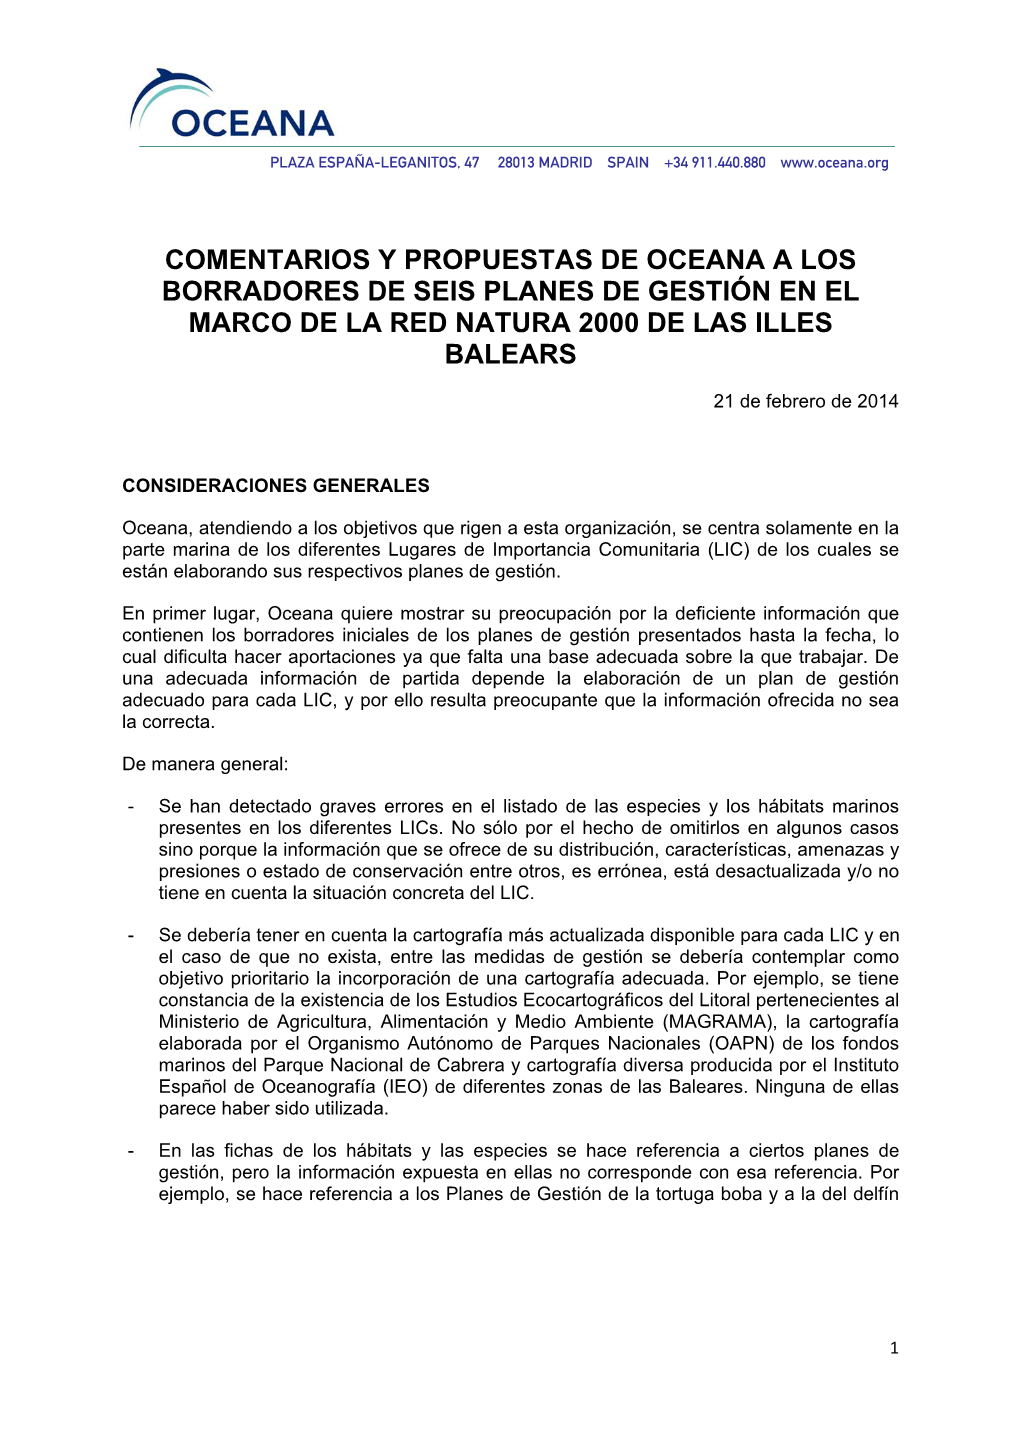 Comentarios Y Propuestas De Oceana a Los Borradores De Seis Planes De Gestión En El Marco De La Red Natura 2000 De Las Illes Balears